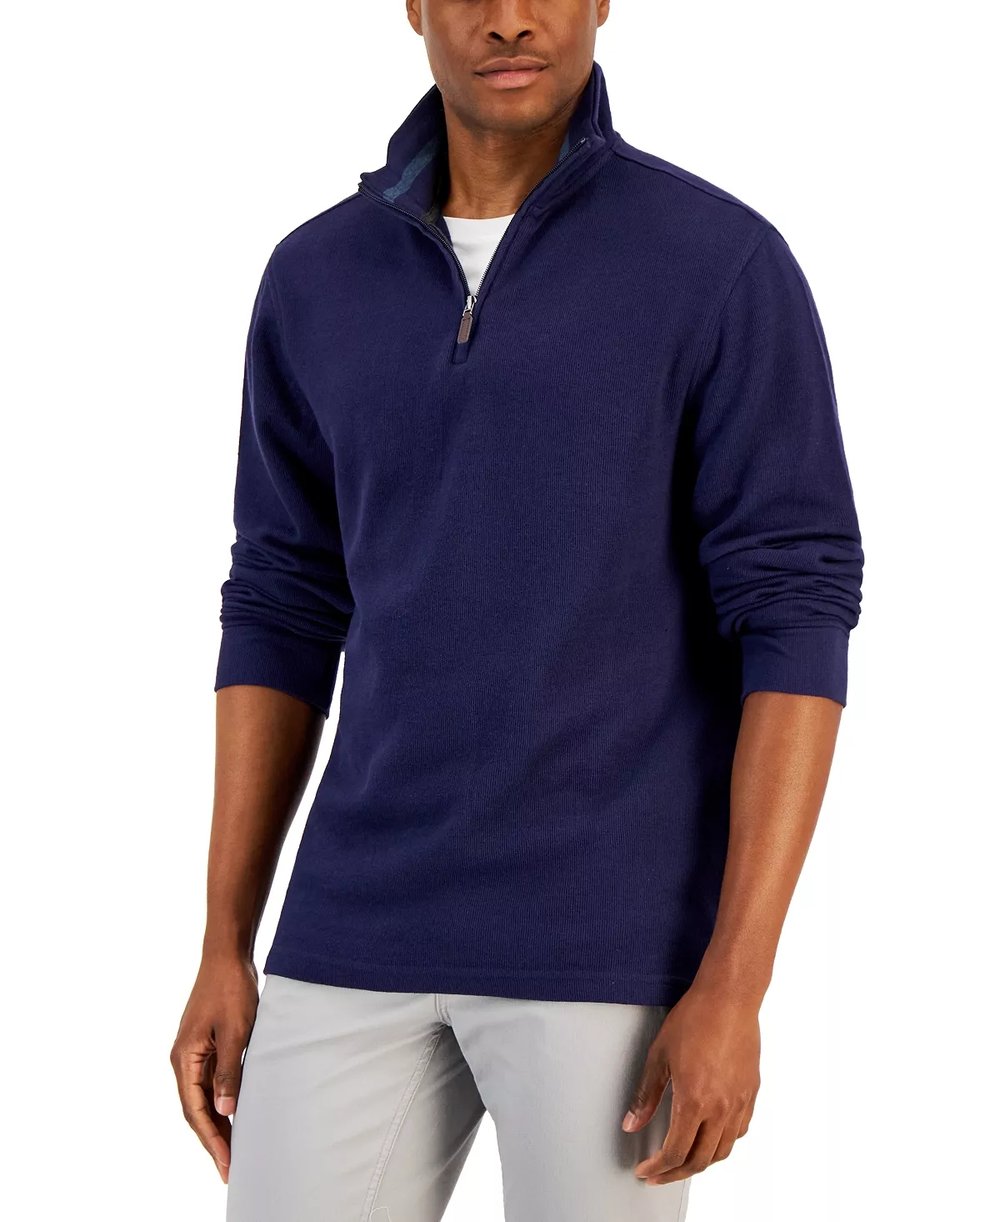 Luxury Soft Quarter-Zip Sweater - Timeless Elegance Meets Modern Comfort